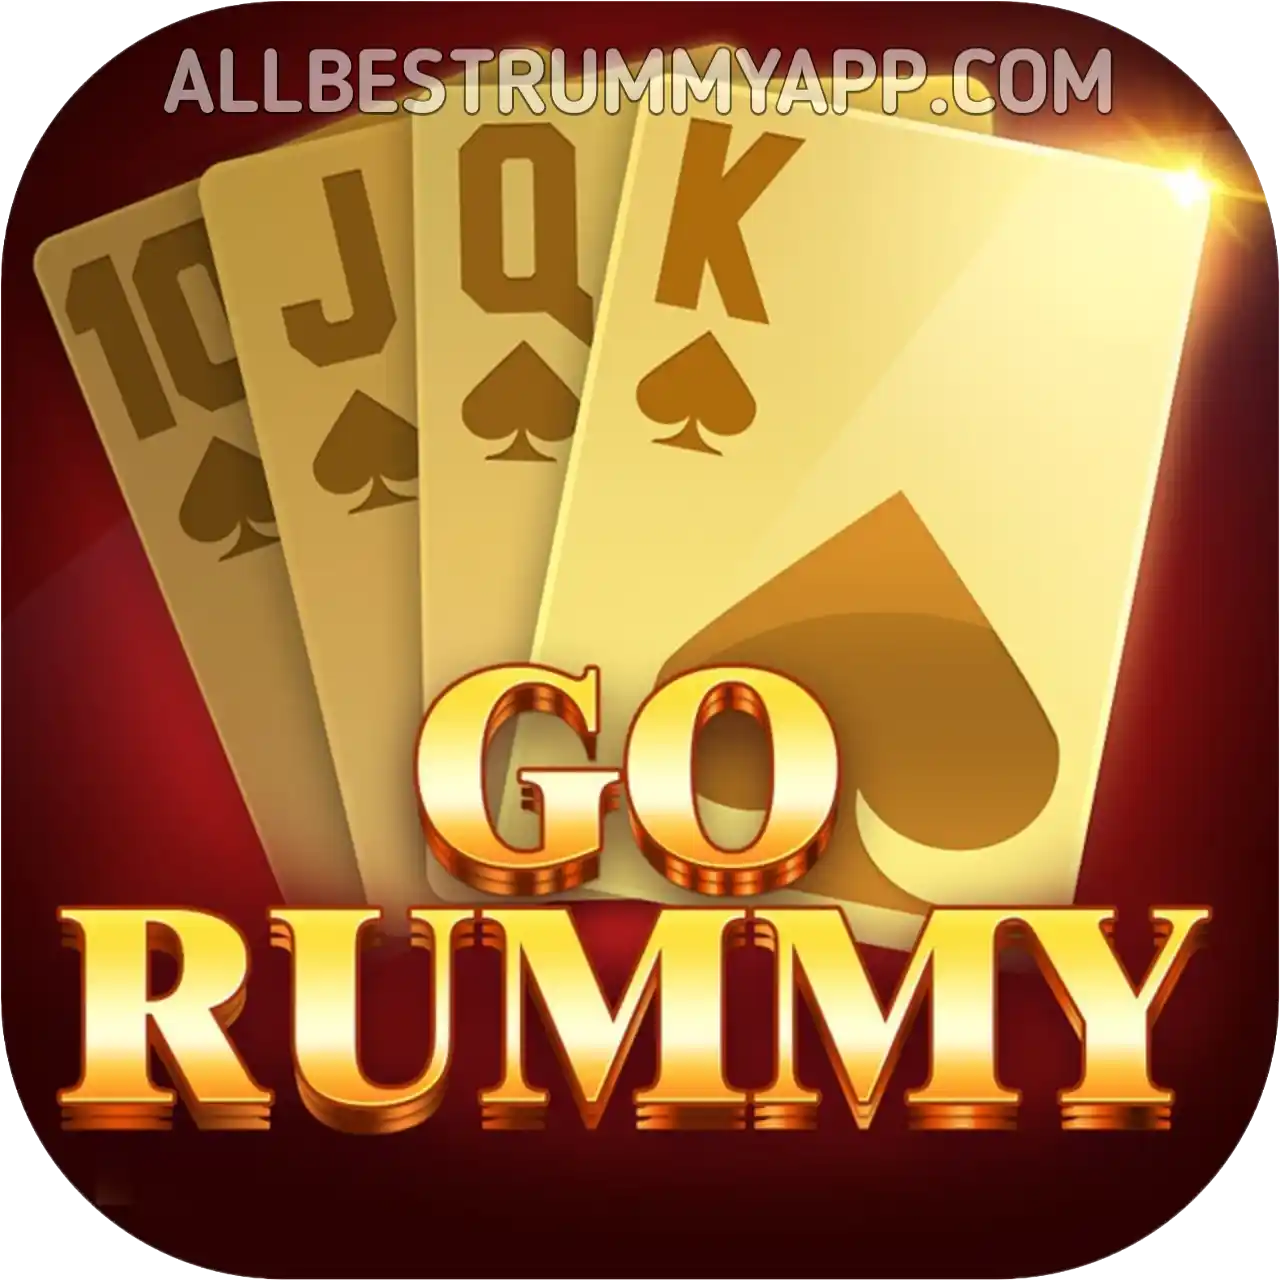 Go Rummy APK - All Rummy App List